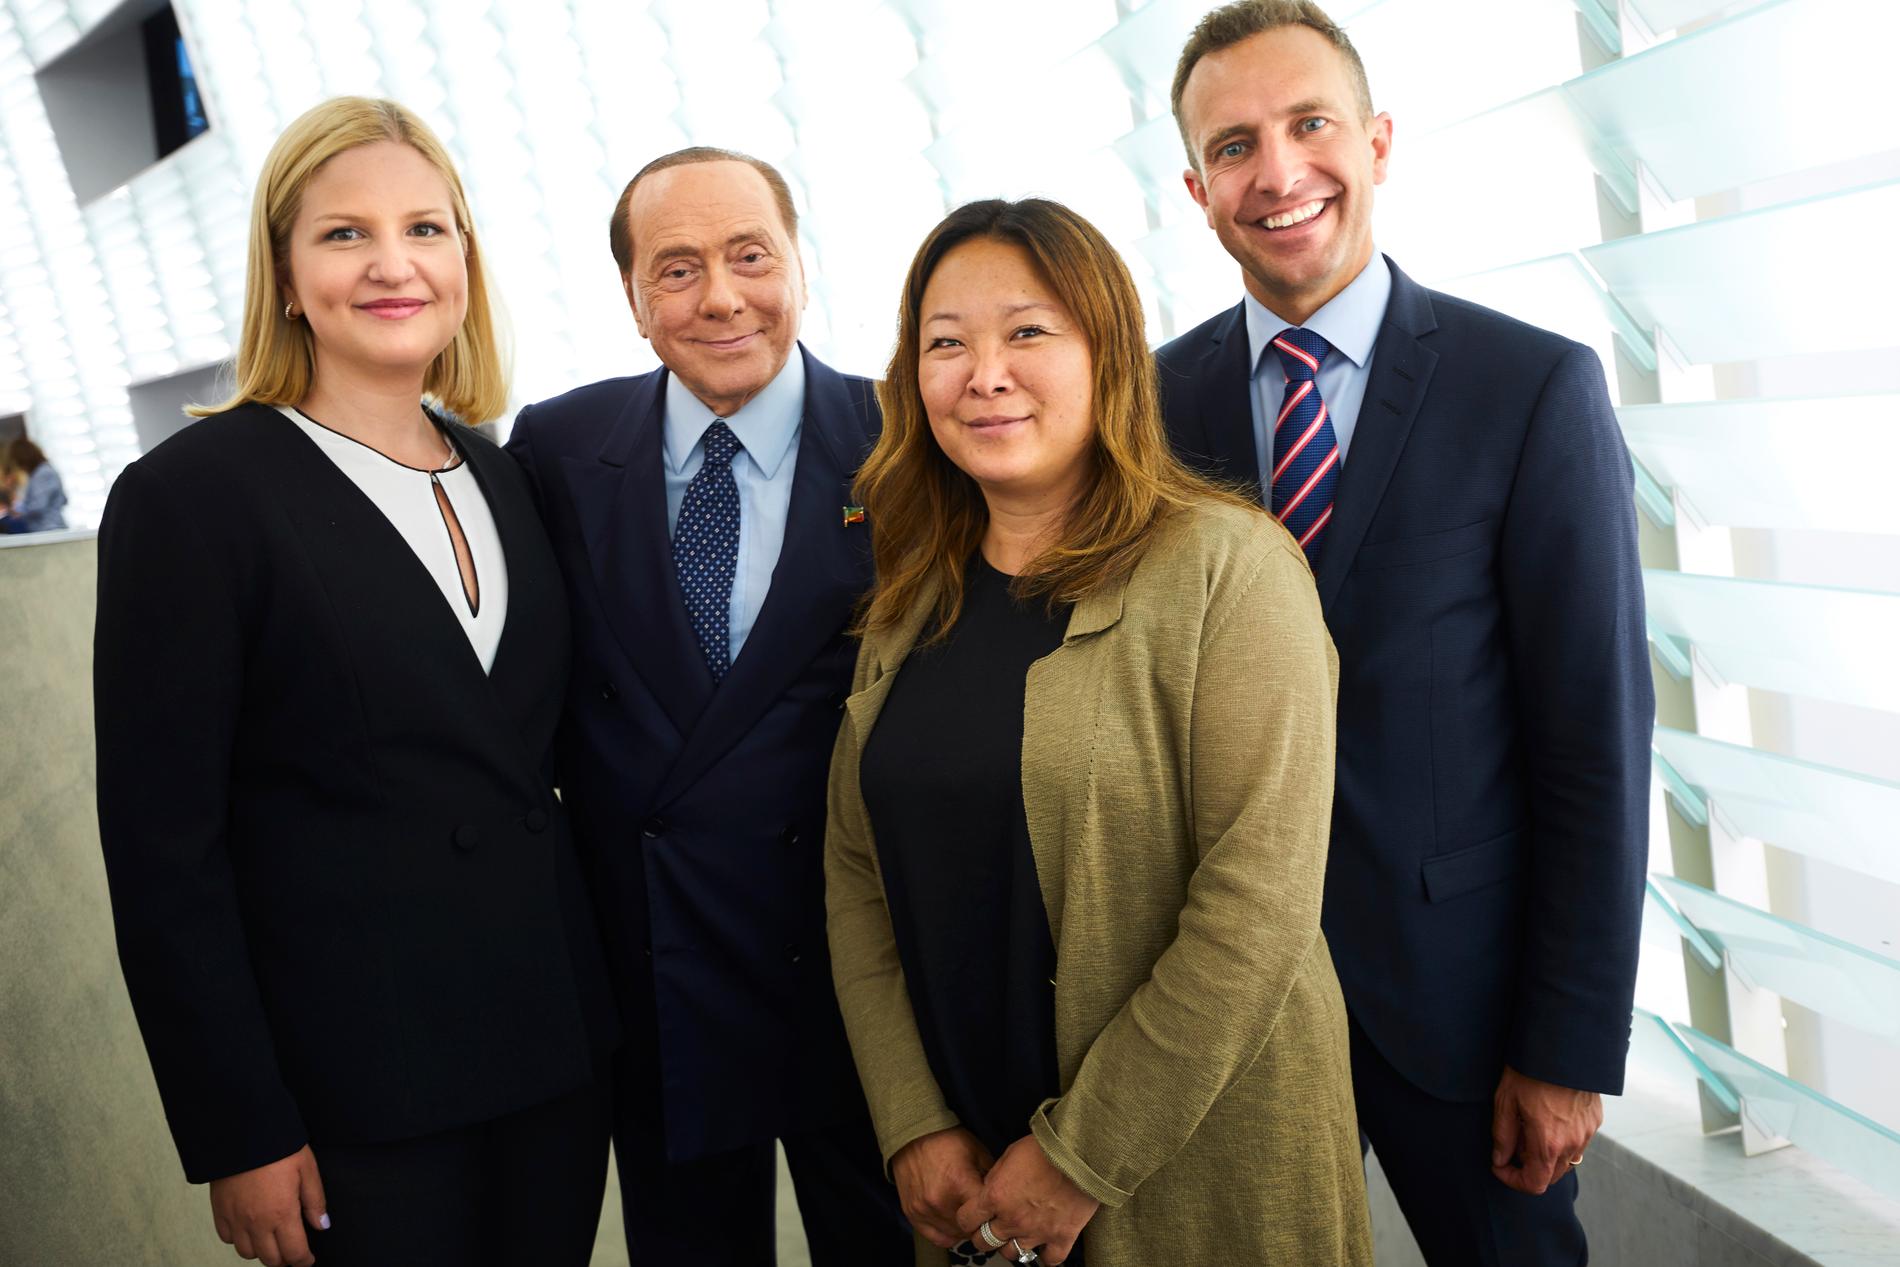 Svenska M-ledamöterna i EU-parlamentet Arba Kokalari, Jessica Polfjärd och Tomas Tobé tillsammans med italienske kollegan Silvio Berlusconi.